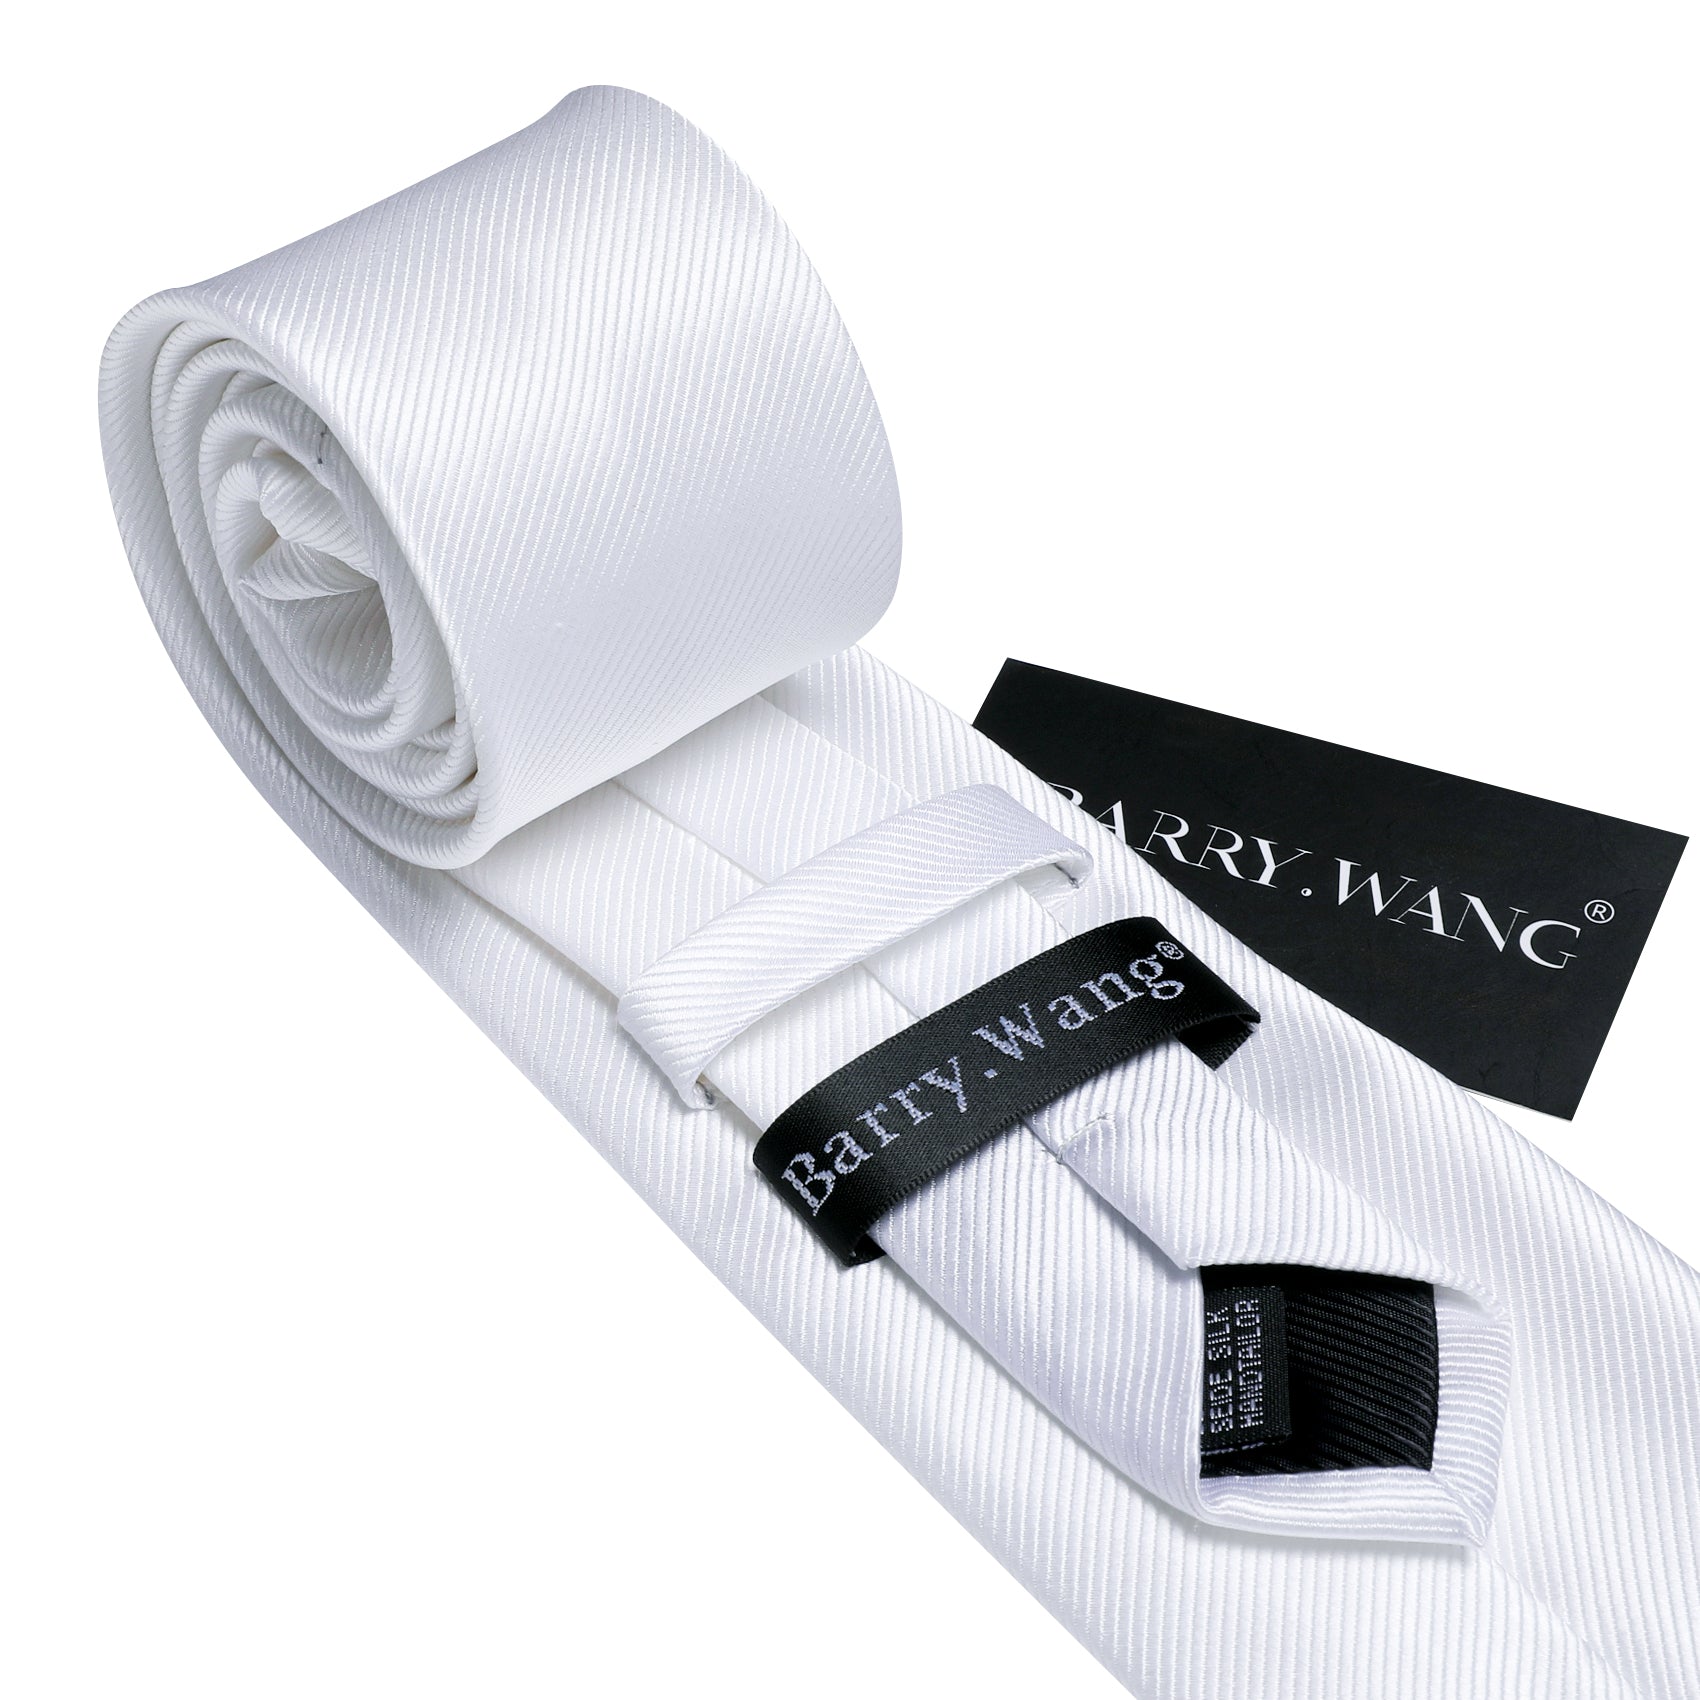 White Solid Silk Tie Handkerchief Cufflinks Set